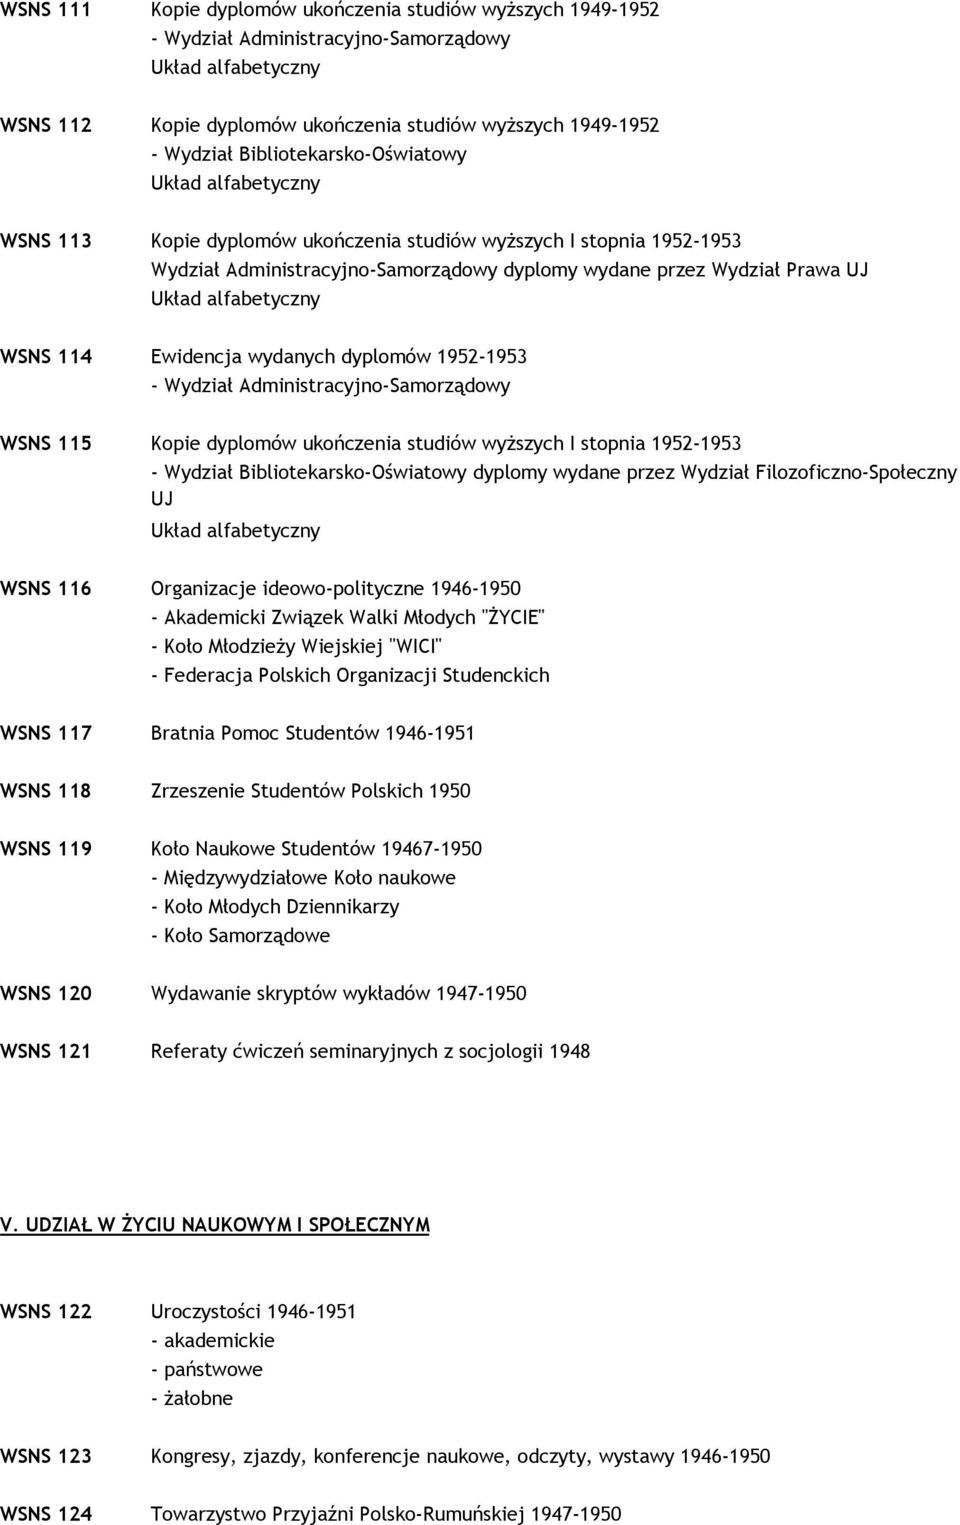 Wydział Administracyjno-Samorządowy WSNS 115 Kopie dyplomów ukończenia studiów wyŝszych I stopnia 1952-1953 - Wydział Bibliotekarsko-Oświatowy dyplomy wydane przez Wydział Filozoficzno-Społeczny UJ